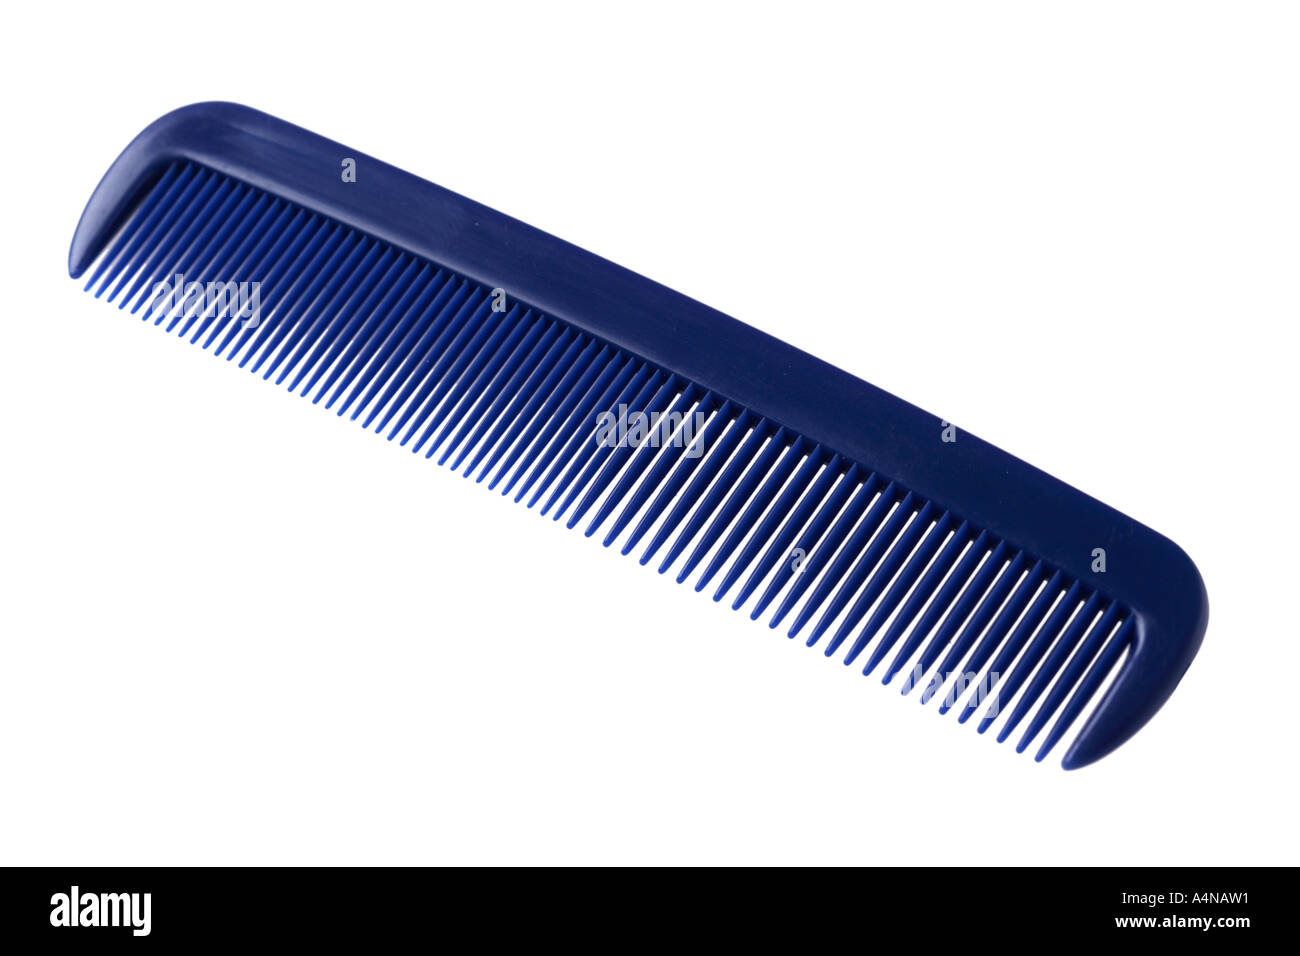 Plastic Hair Comb Stock Photo